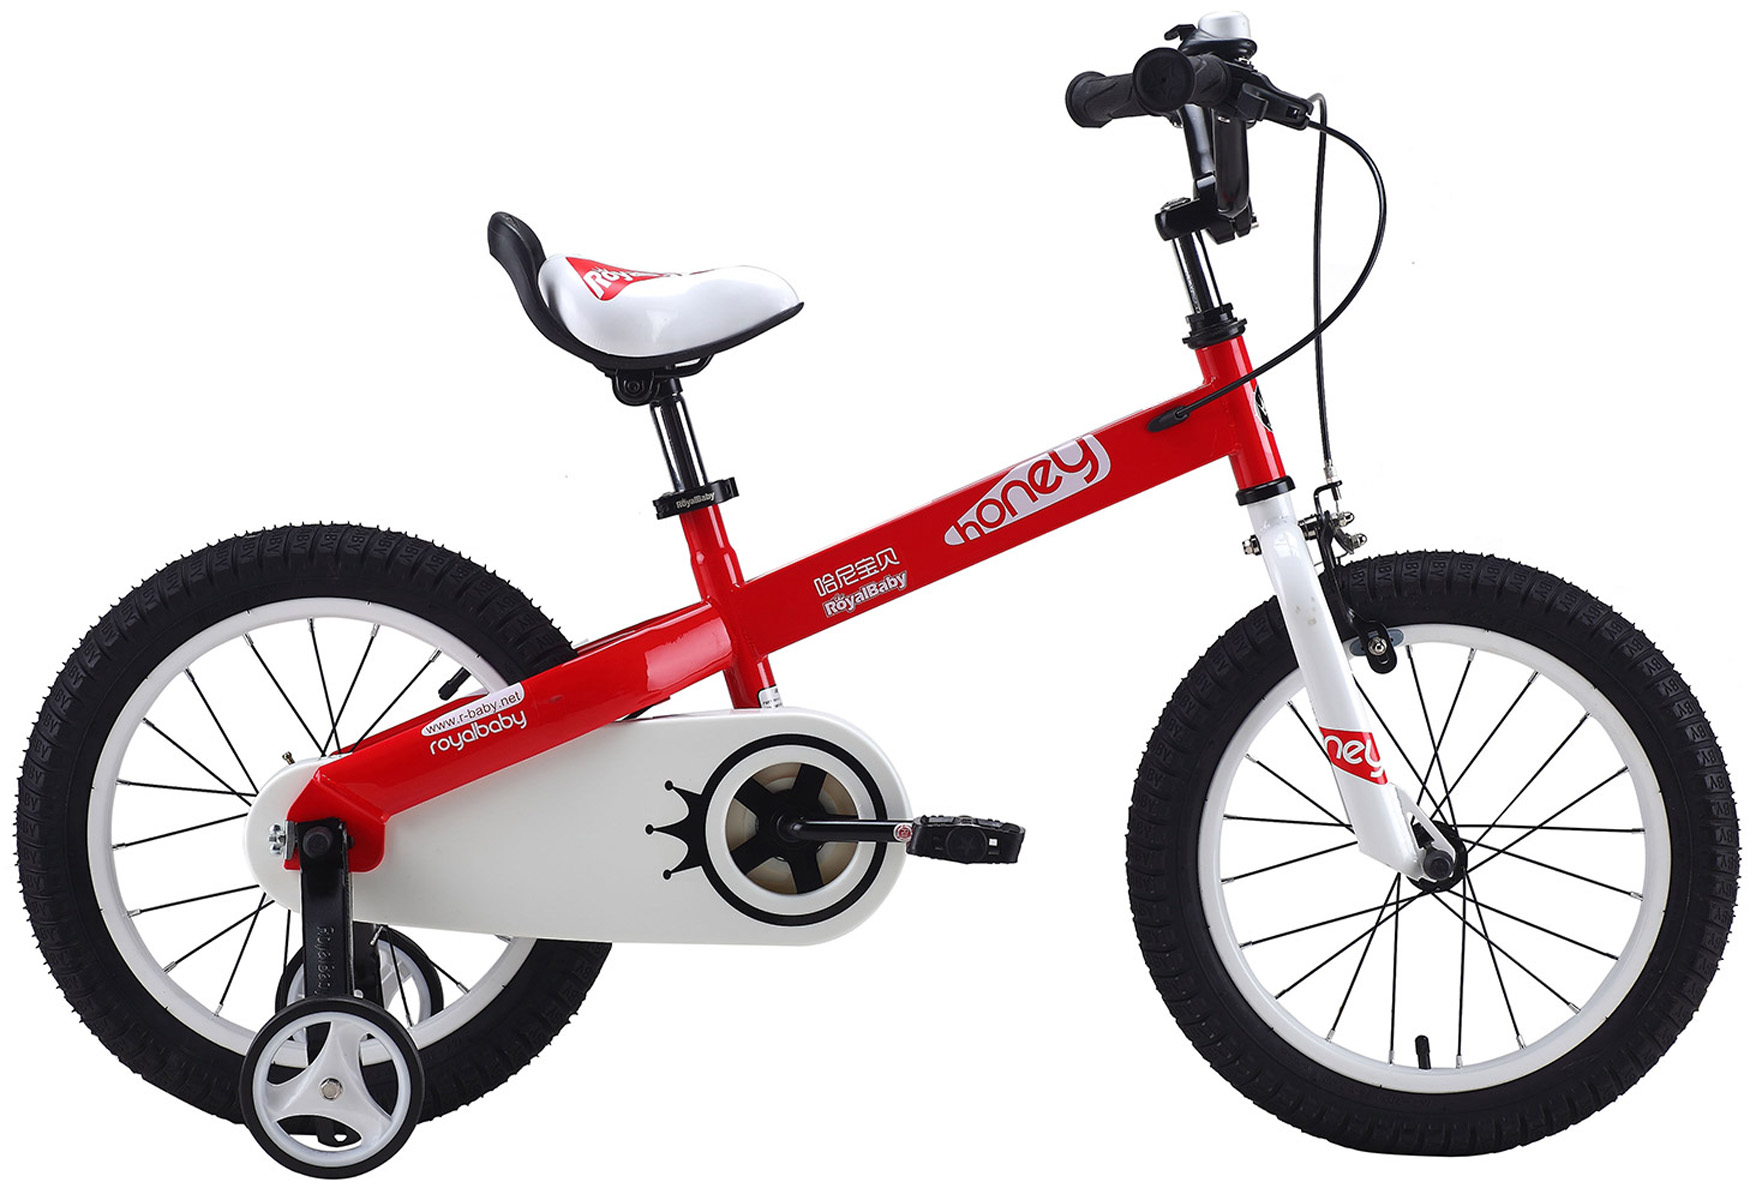  Отзывы о Детском велосипеде Royal Baby Honey Steel 18" (2020) 2020